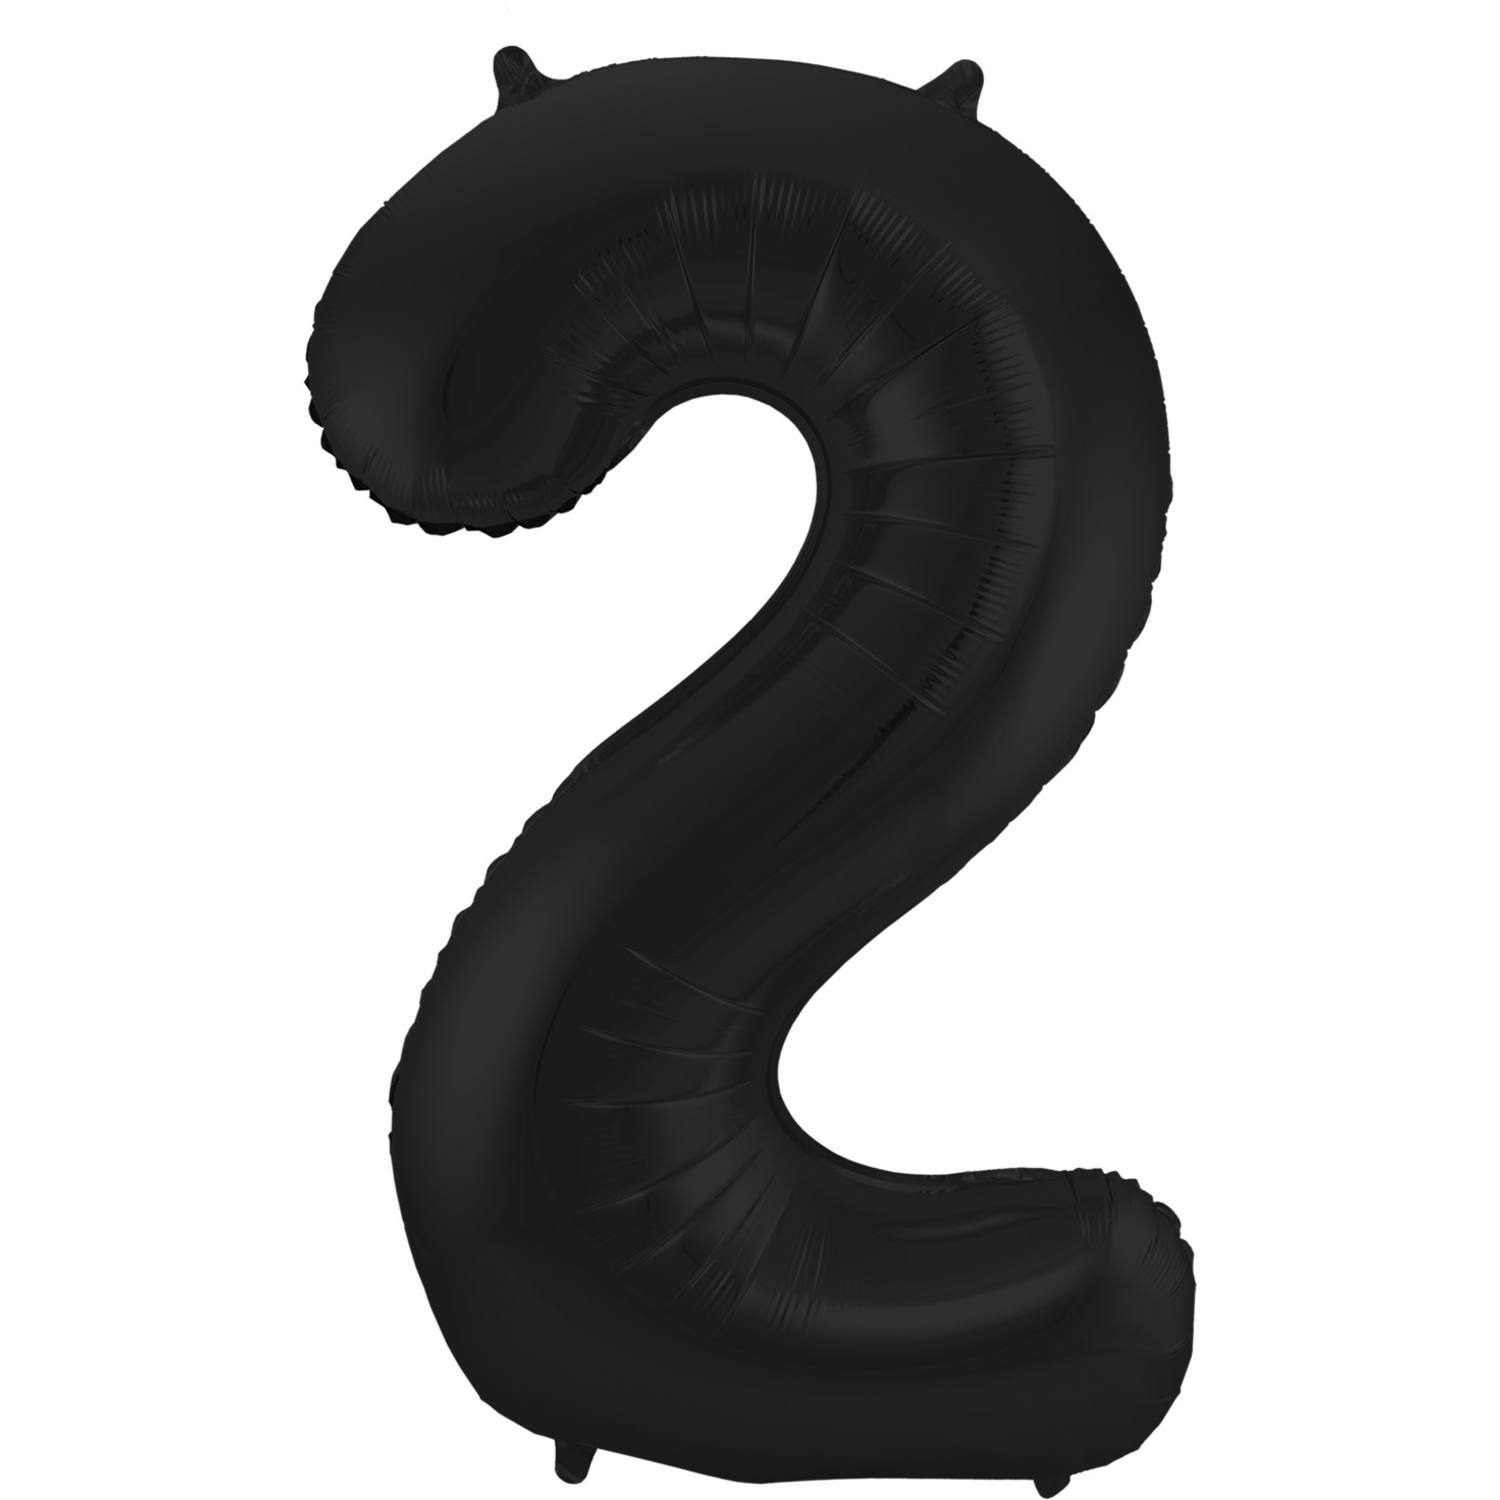 Folie ballon van cijfer 2 in het zwart 86 cm